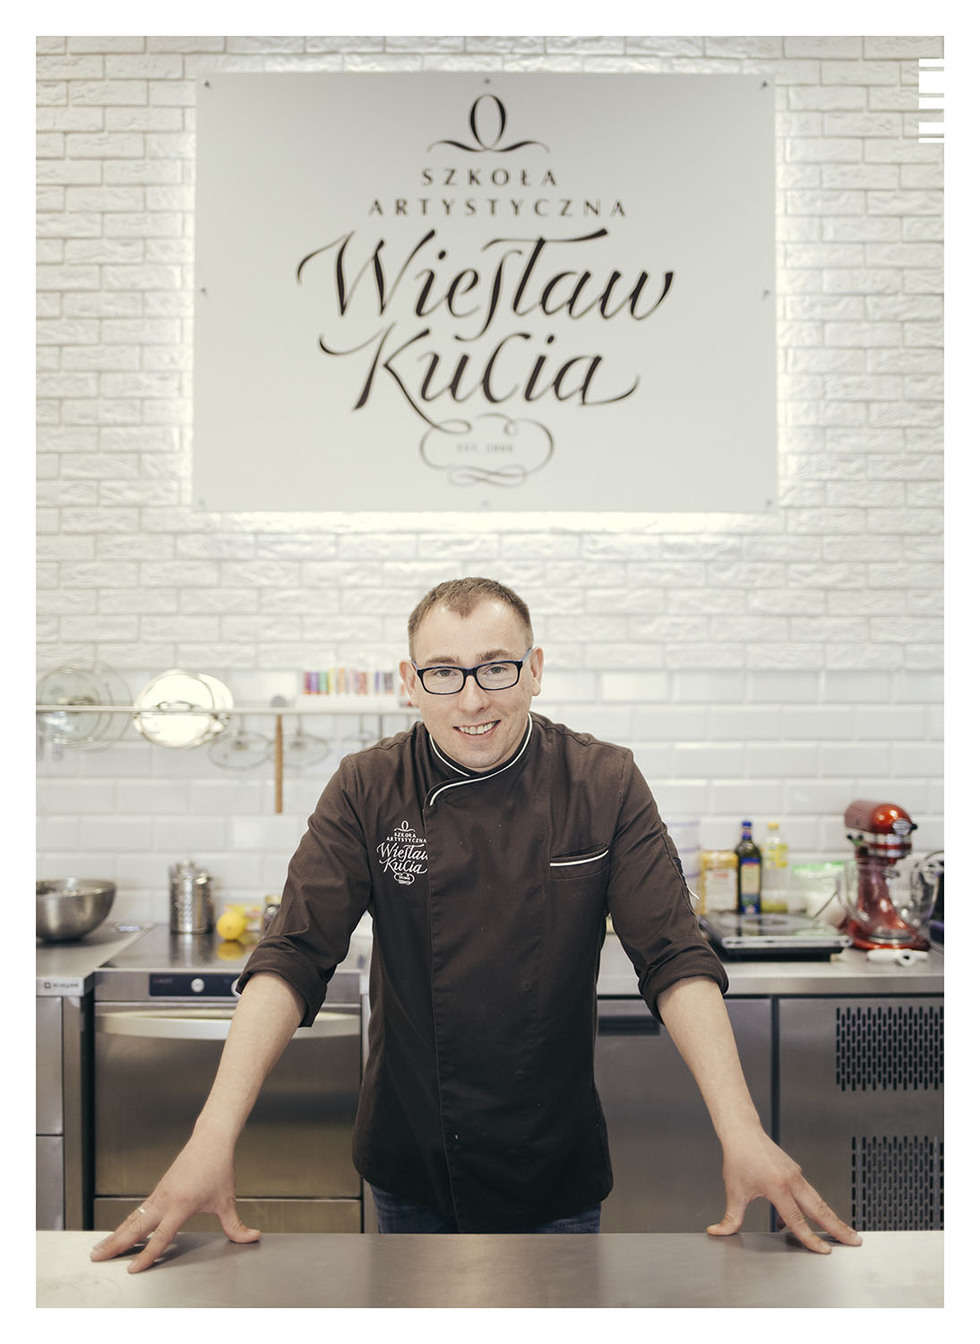  <p>Wiesław Kucia. Prowadzi akademię kulinarną w miejscu, kt&oacute;re było kiedyś przemysłowym zapleczem Lublina. To tam znajduje się niezwykła przestrzeń, kt&oacute;ra zachwyca wnętrzem w wyjątkowo przemyślany i smaczny design.&nbsp;</p>